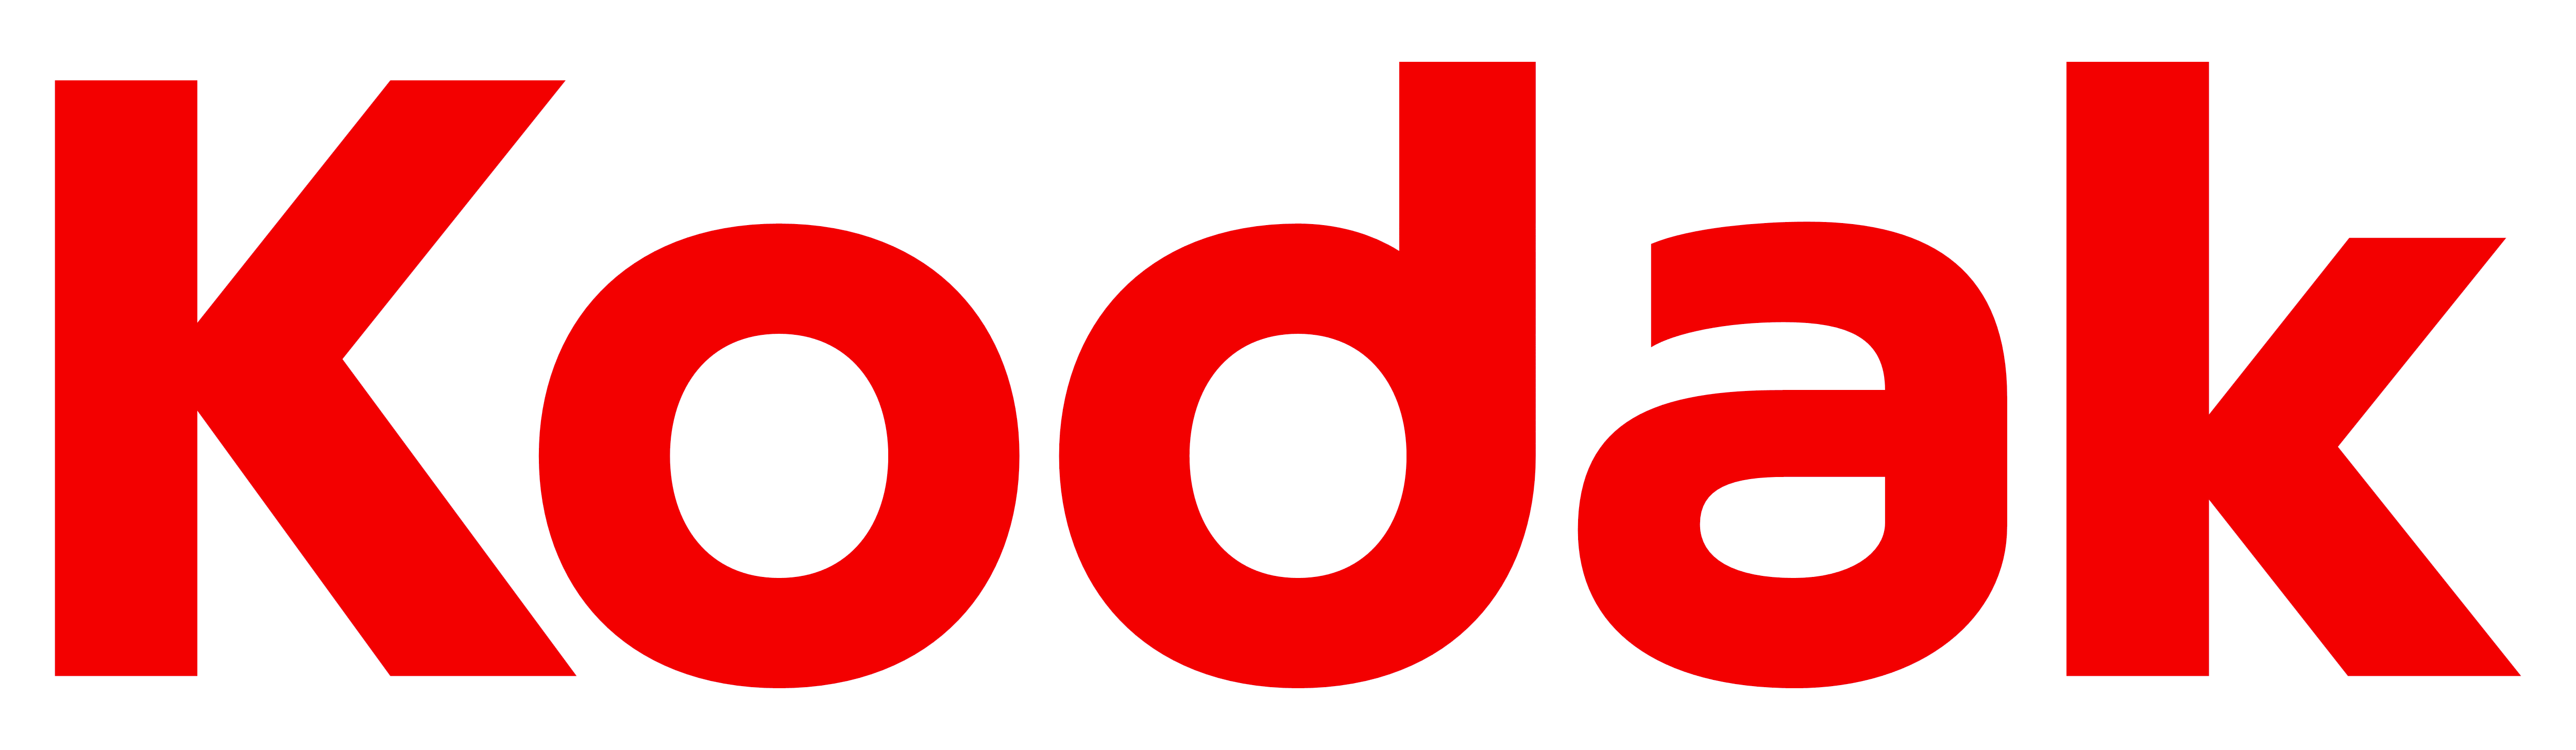 Kodak – Logos Download